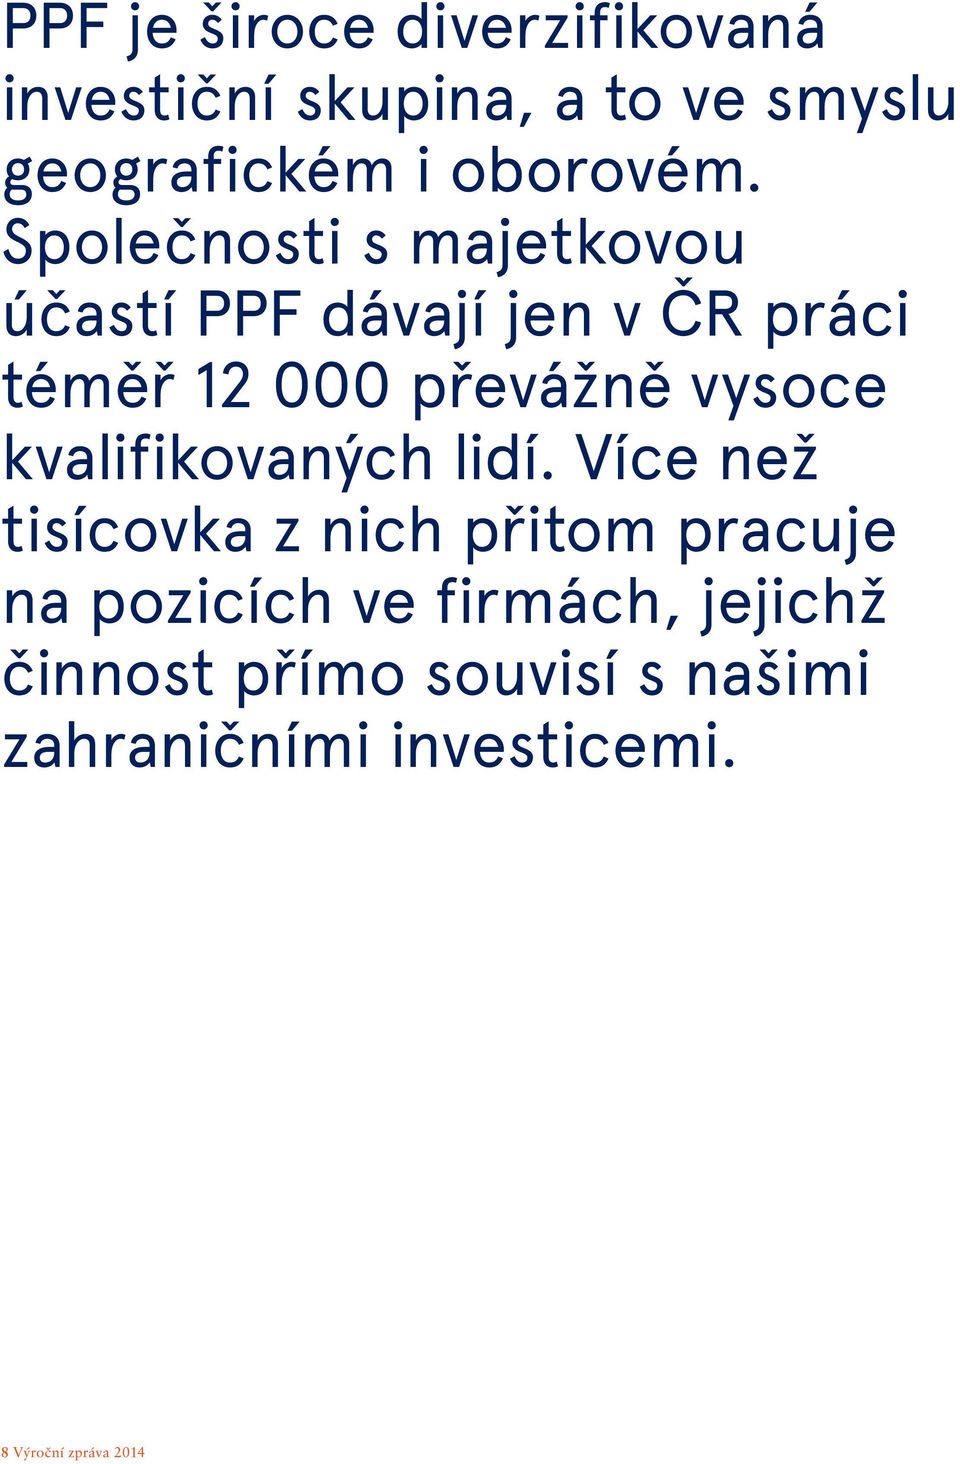 Společnosti s majetkovou účastí PPF dávají jen v ČR práci téměř 12 000 převážně vysoce